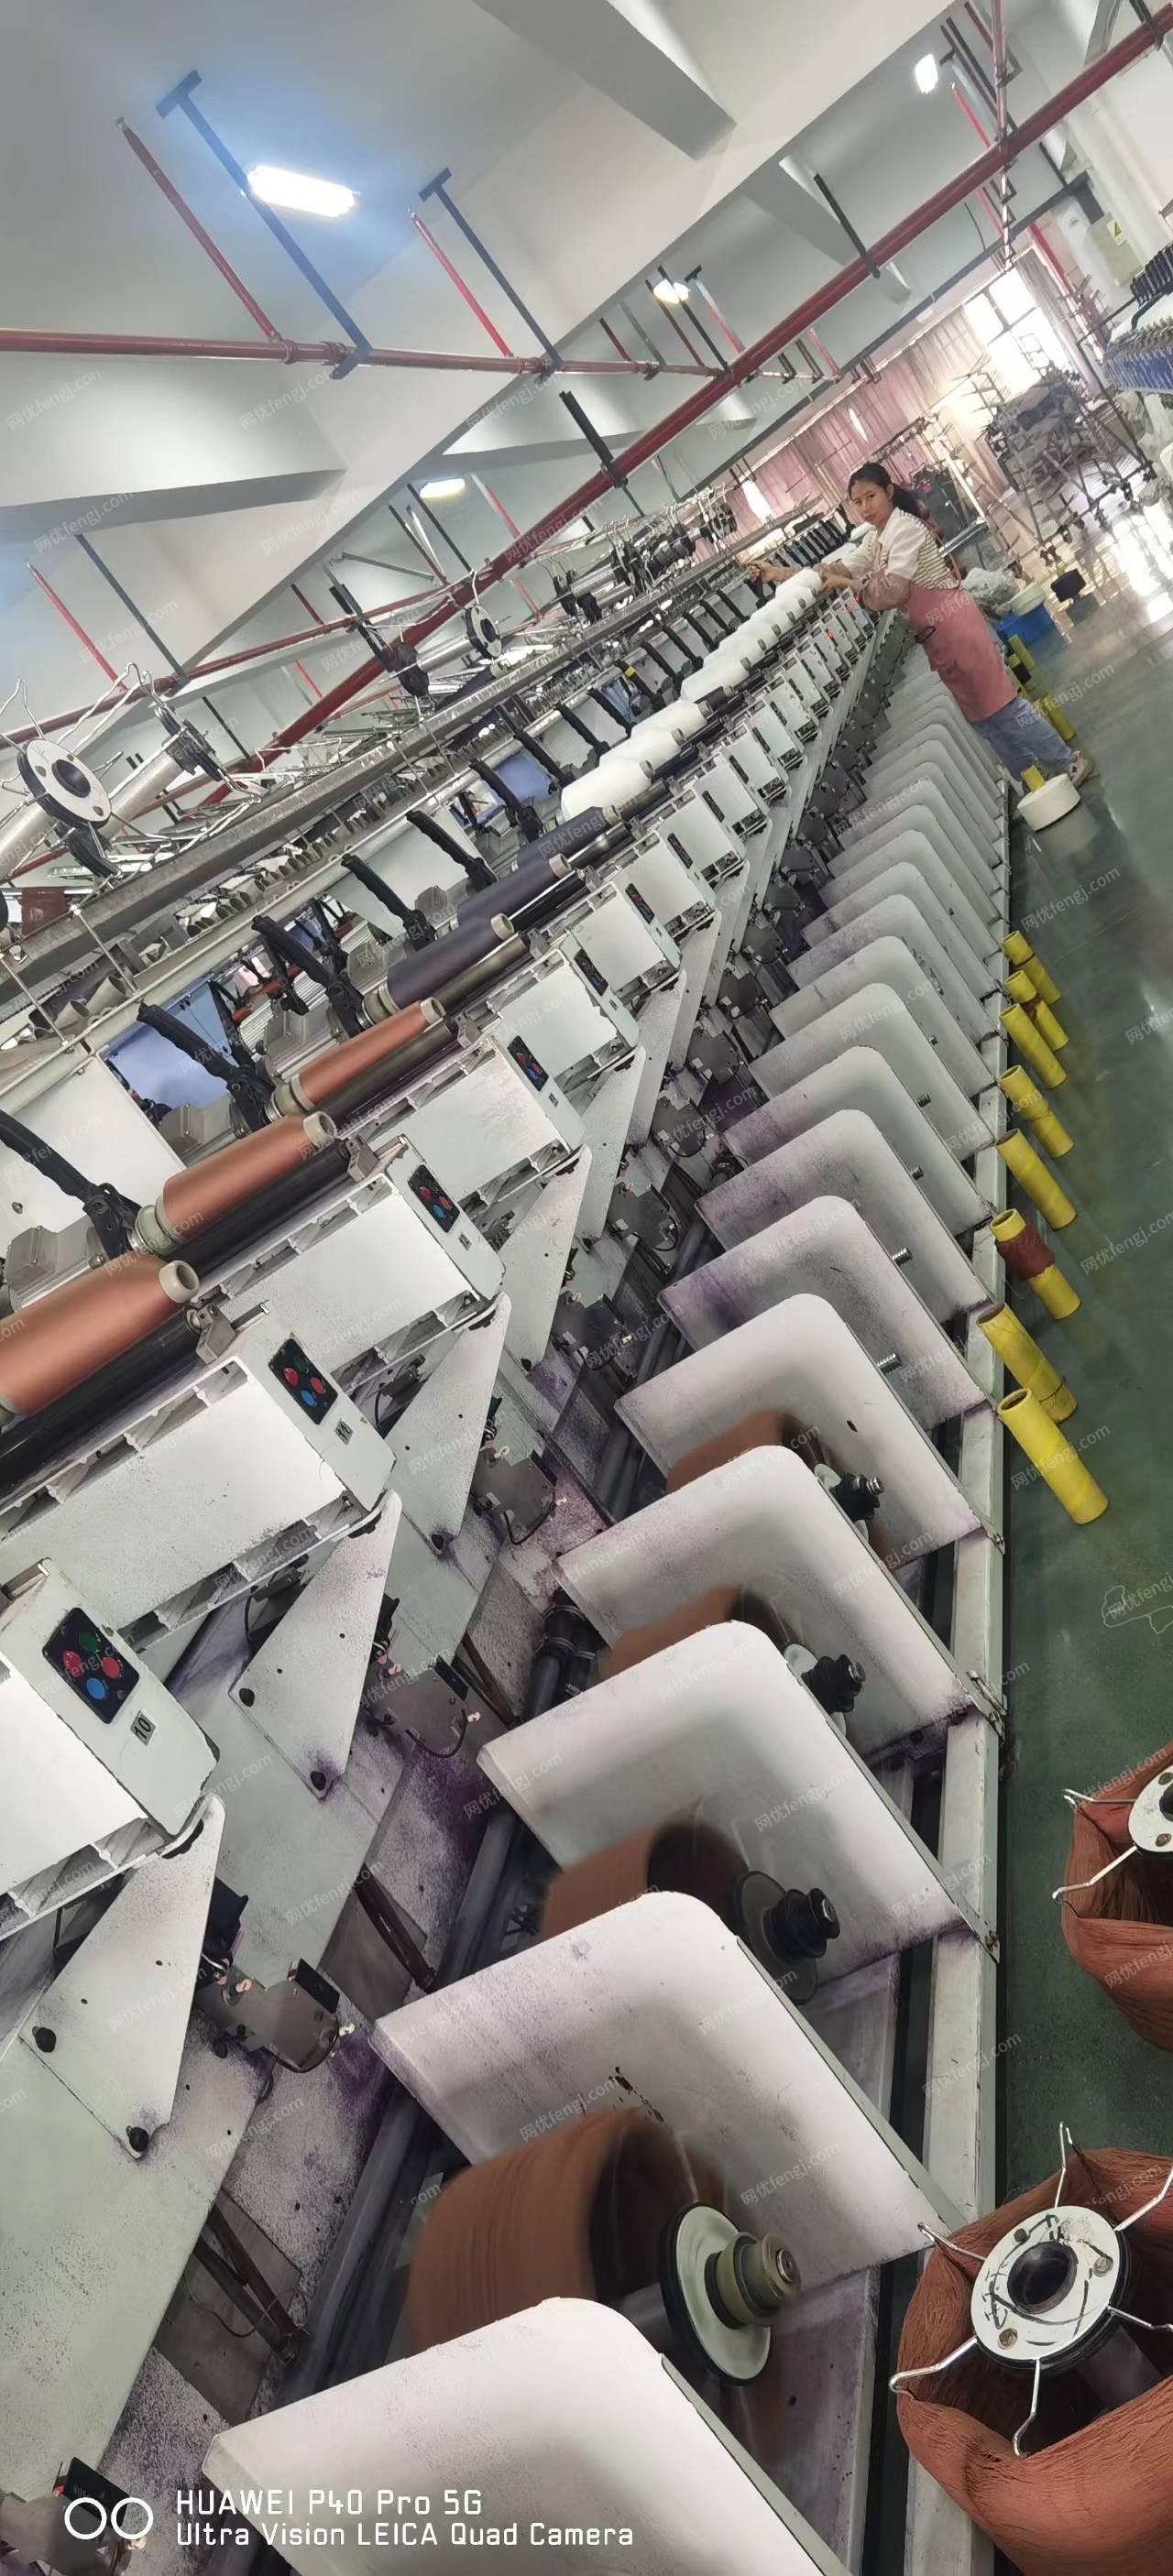 工厂转型处理摇绞机20台、泰和40锭络筒机10台（400个定位）、大小阀门很多、630变压器+配电柜、吨桶、储罐